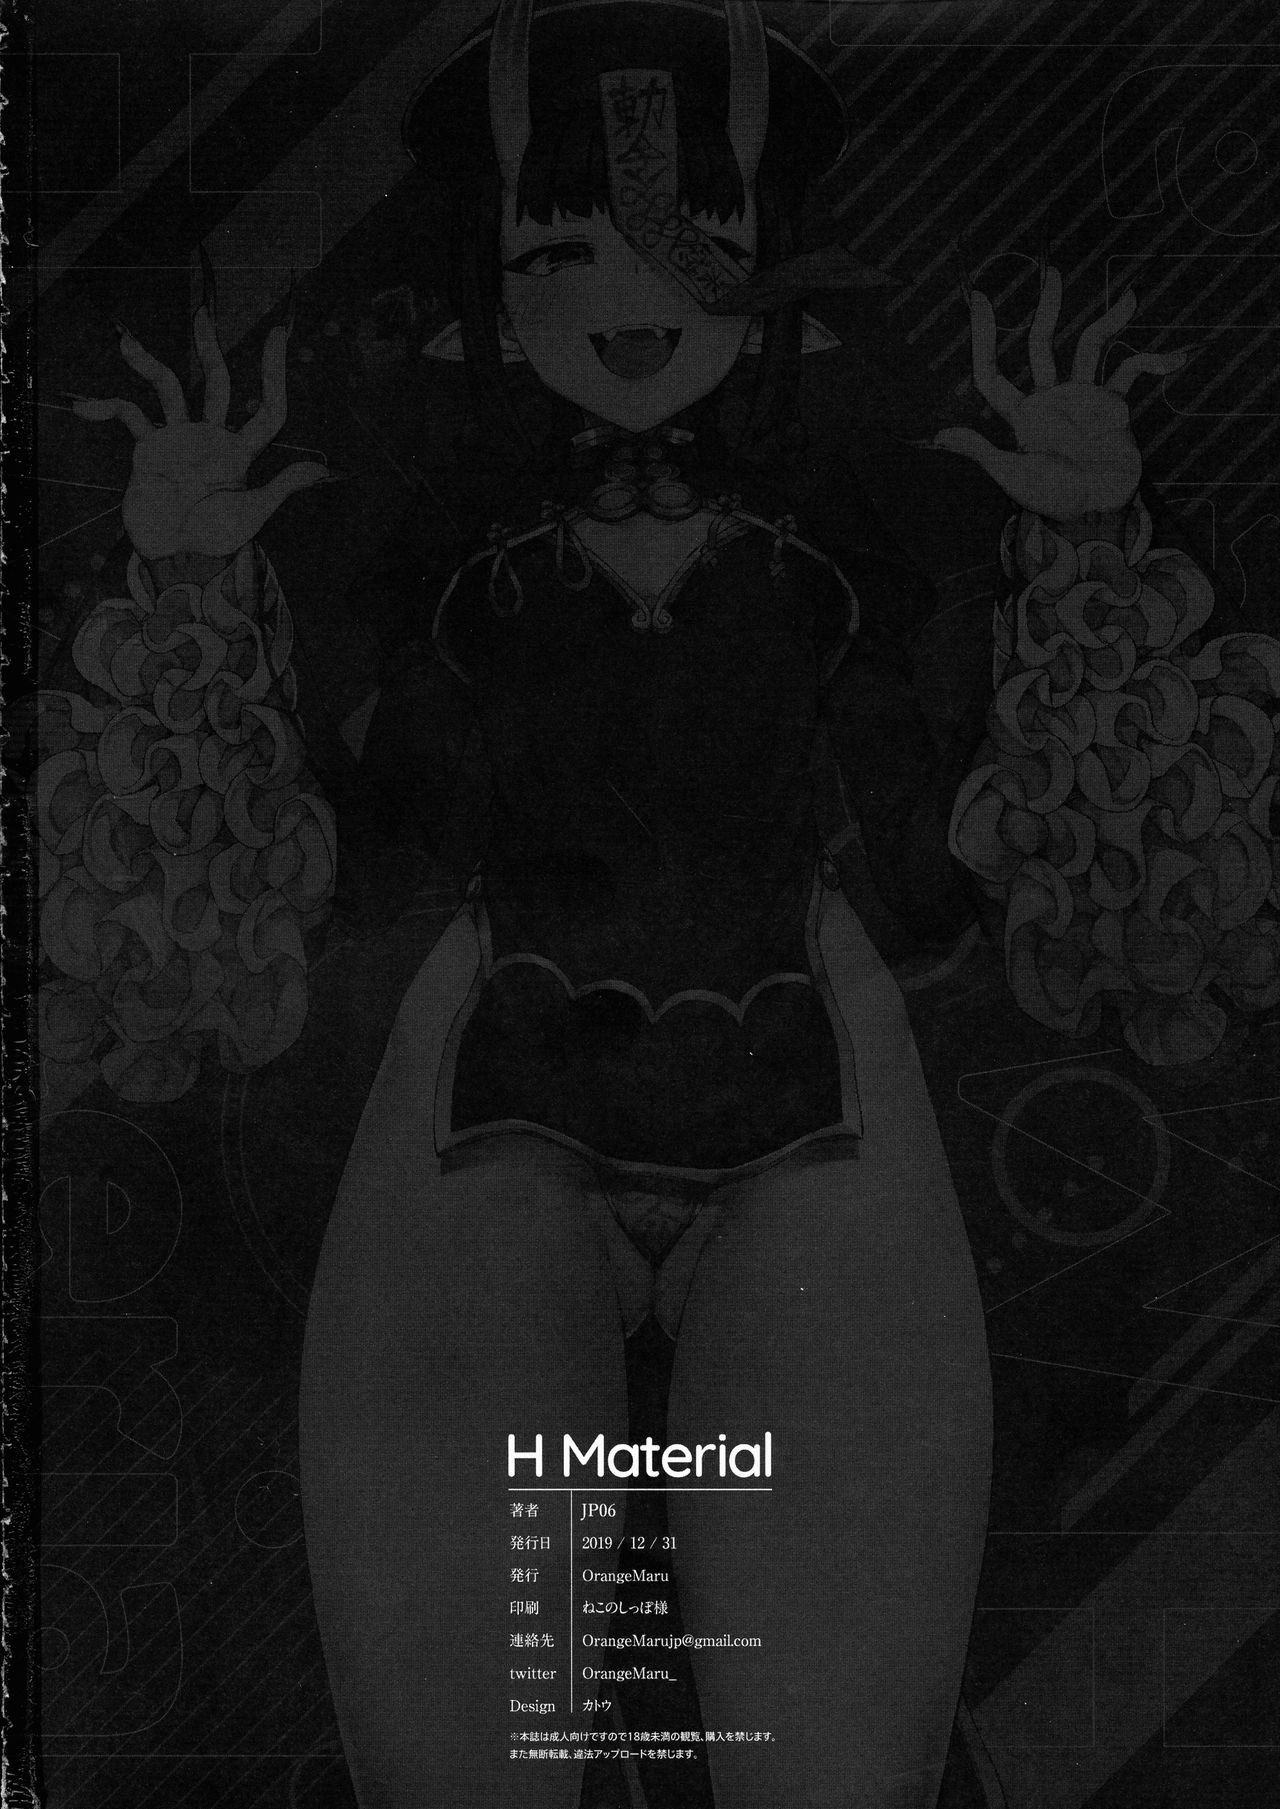 [(JP06)] H Material (Fate Grand Order) - 20